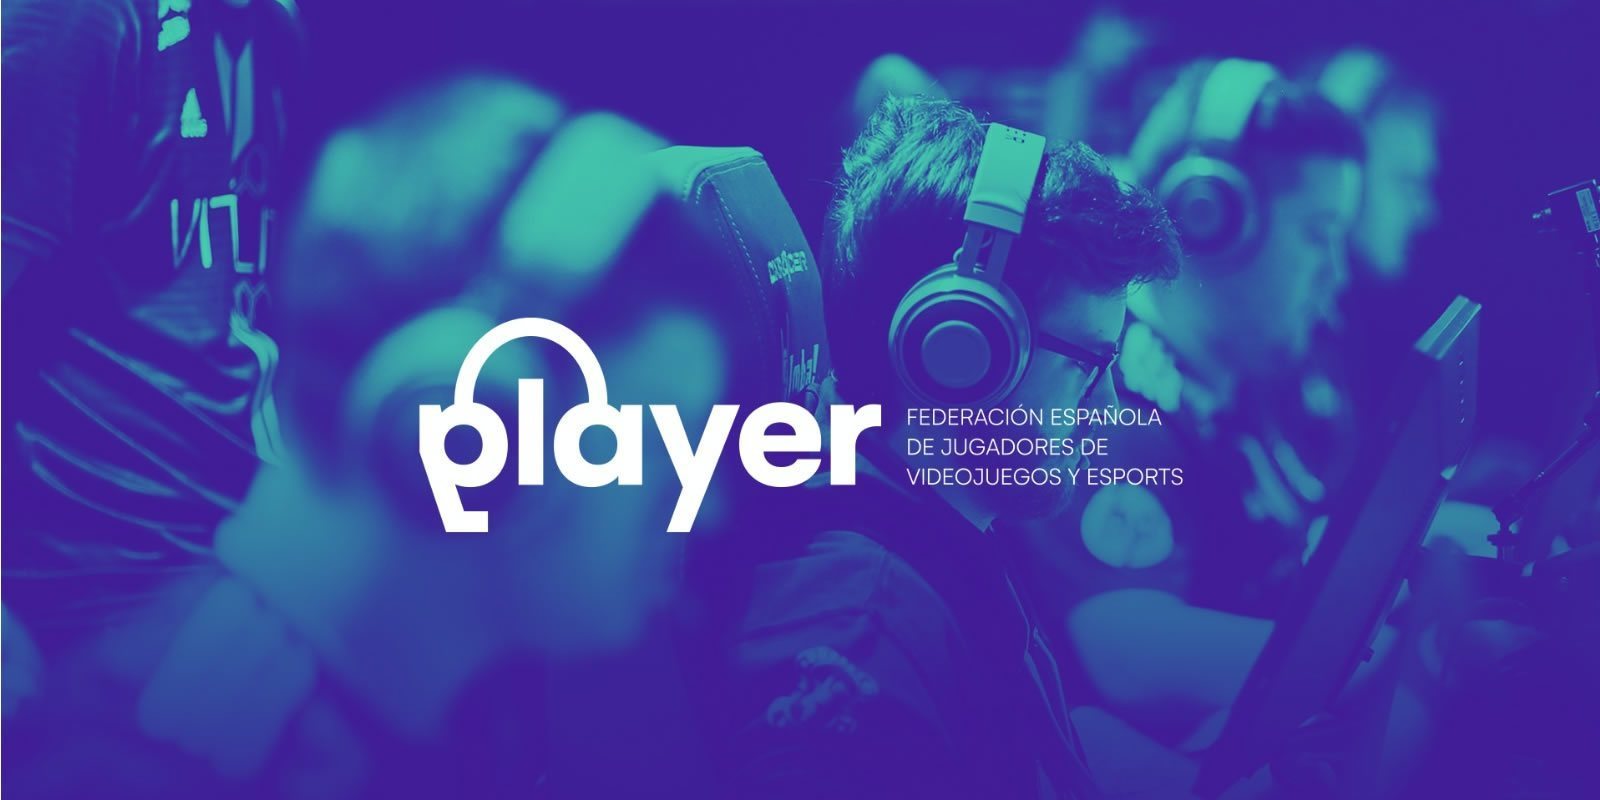 Nace FEJUVES, la Federación Española de Jugadores de Videojuegos y Esports